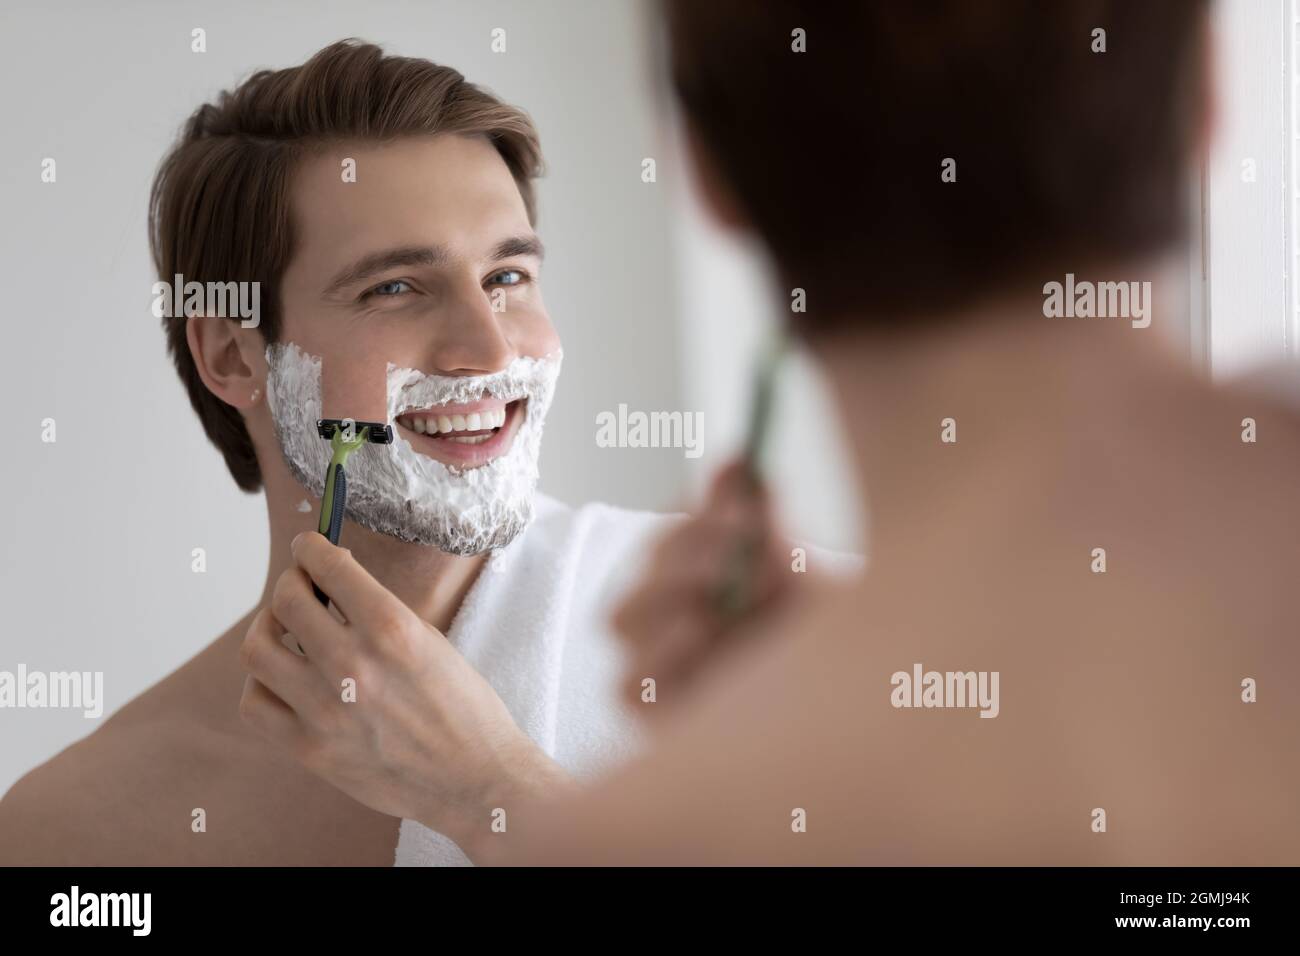 Hübscher junger Mann, der sich sein Gesicht rasiert und in einen Spiegel schaut Stockfoto